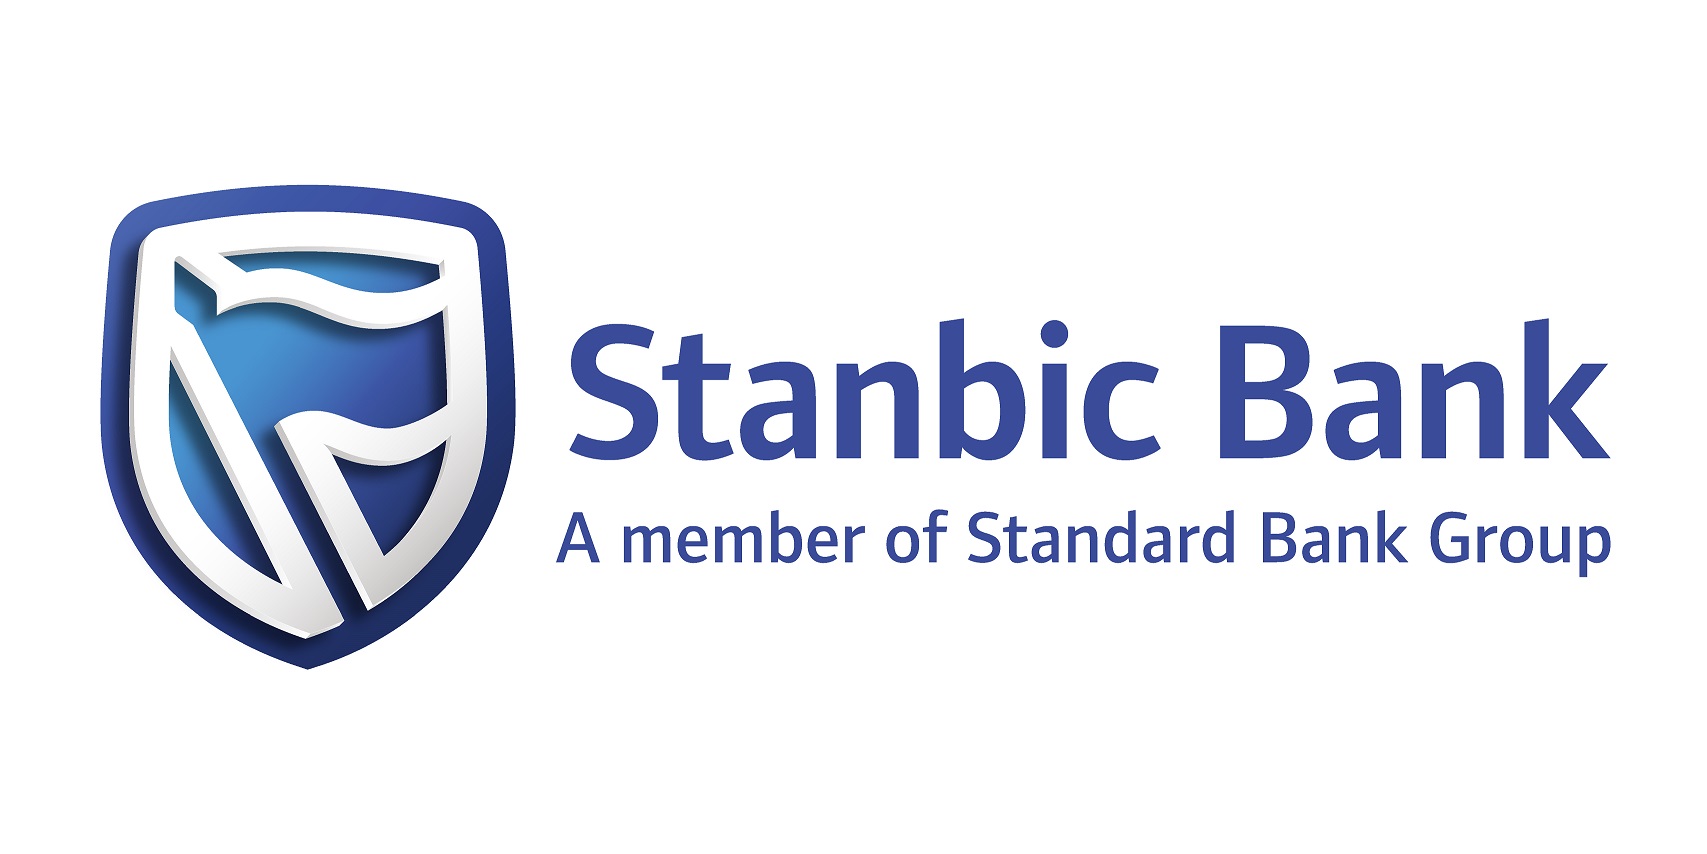 Stanbic-Bank-Logo